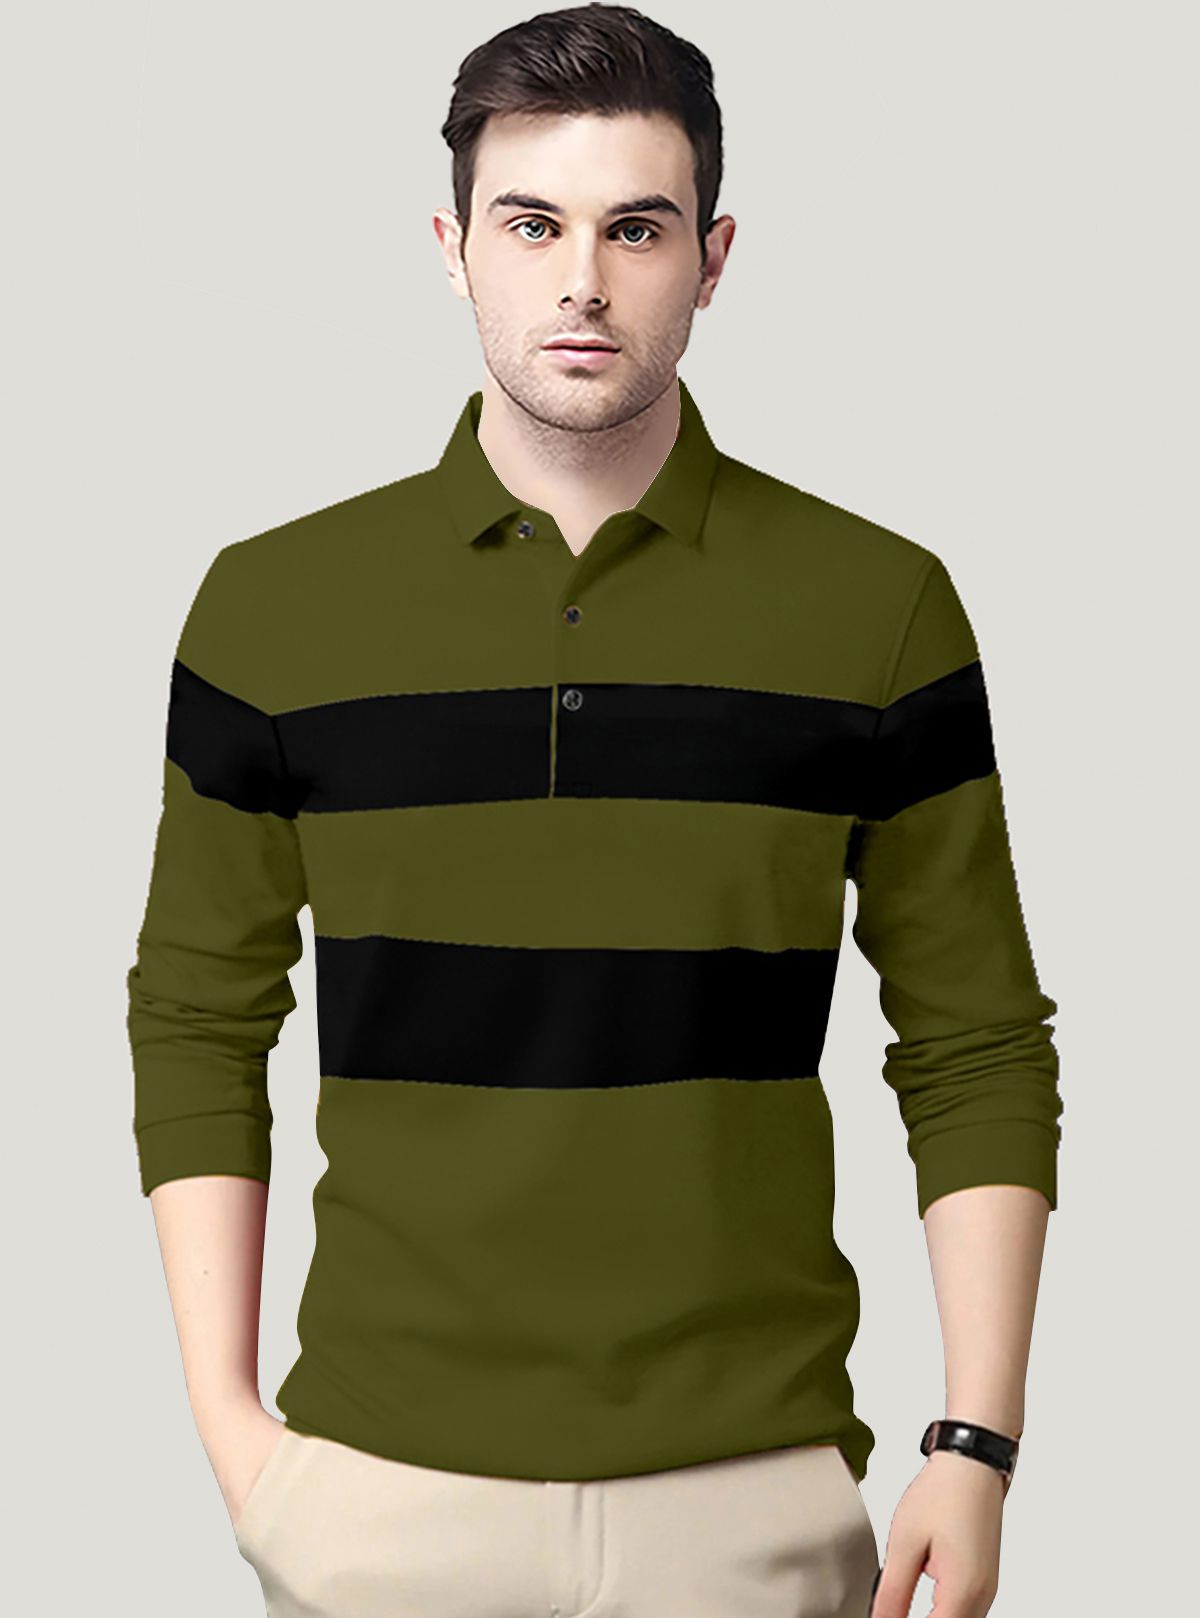     			AUSK - Green Cotton Blend Regular Fit Men's Polo T Shirt ( Pack of 1 )